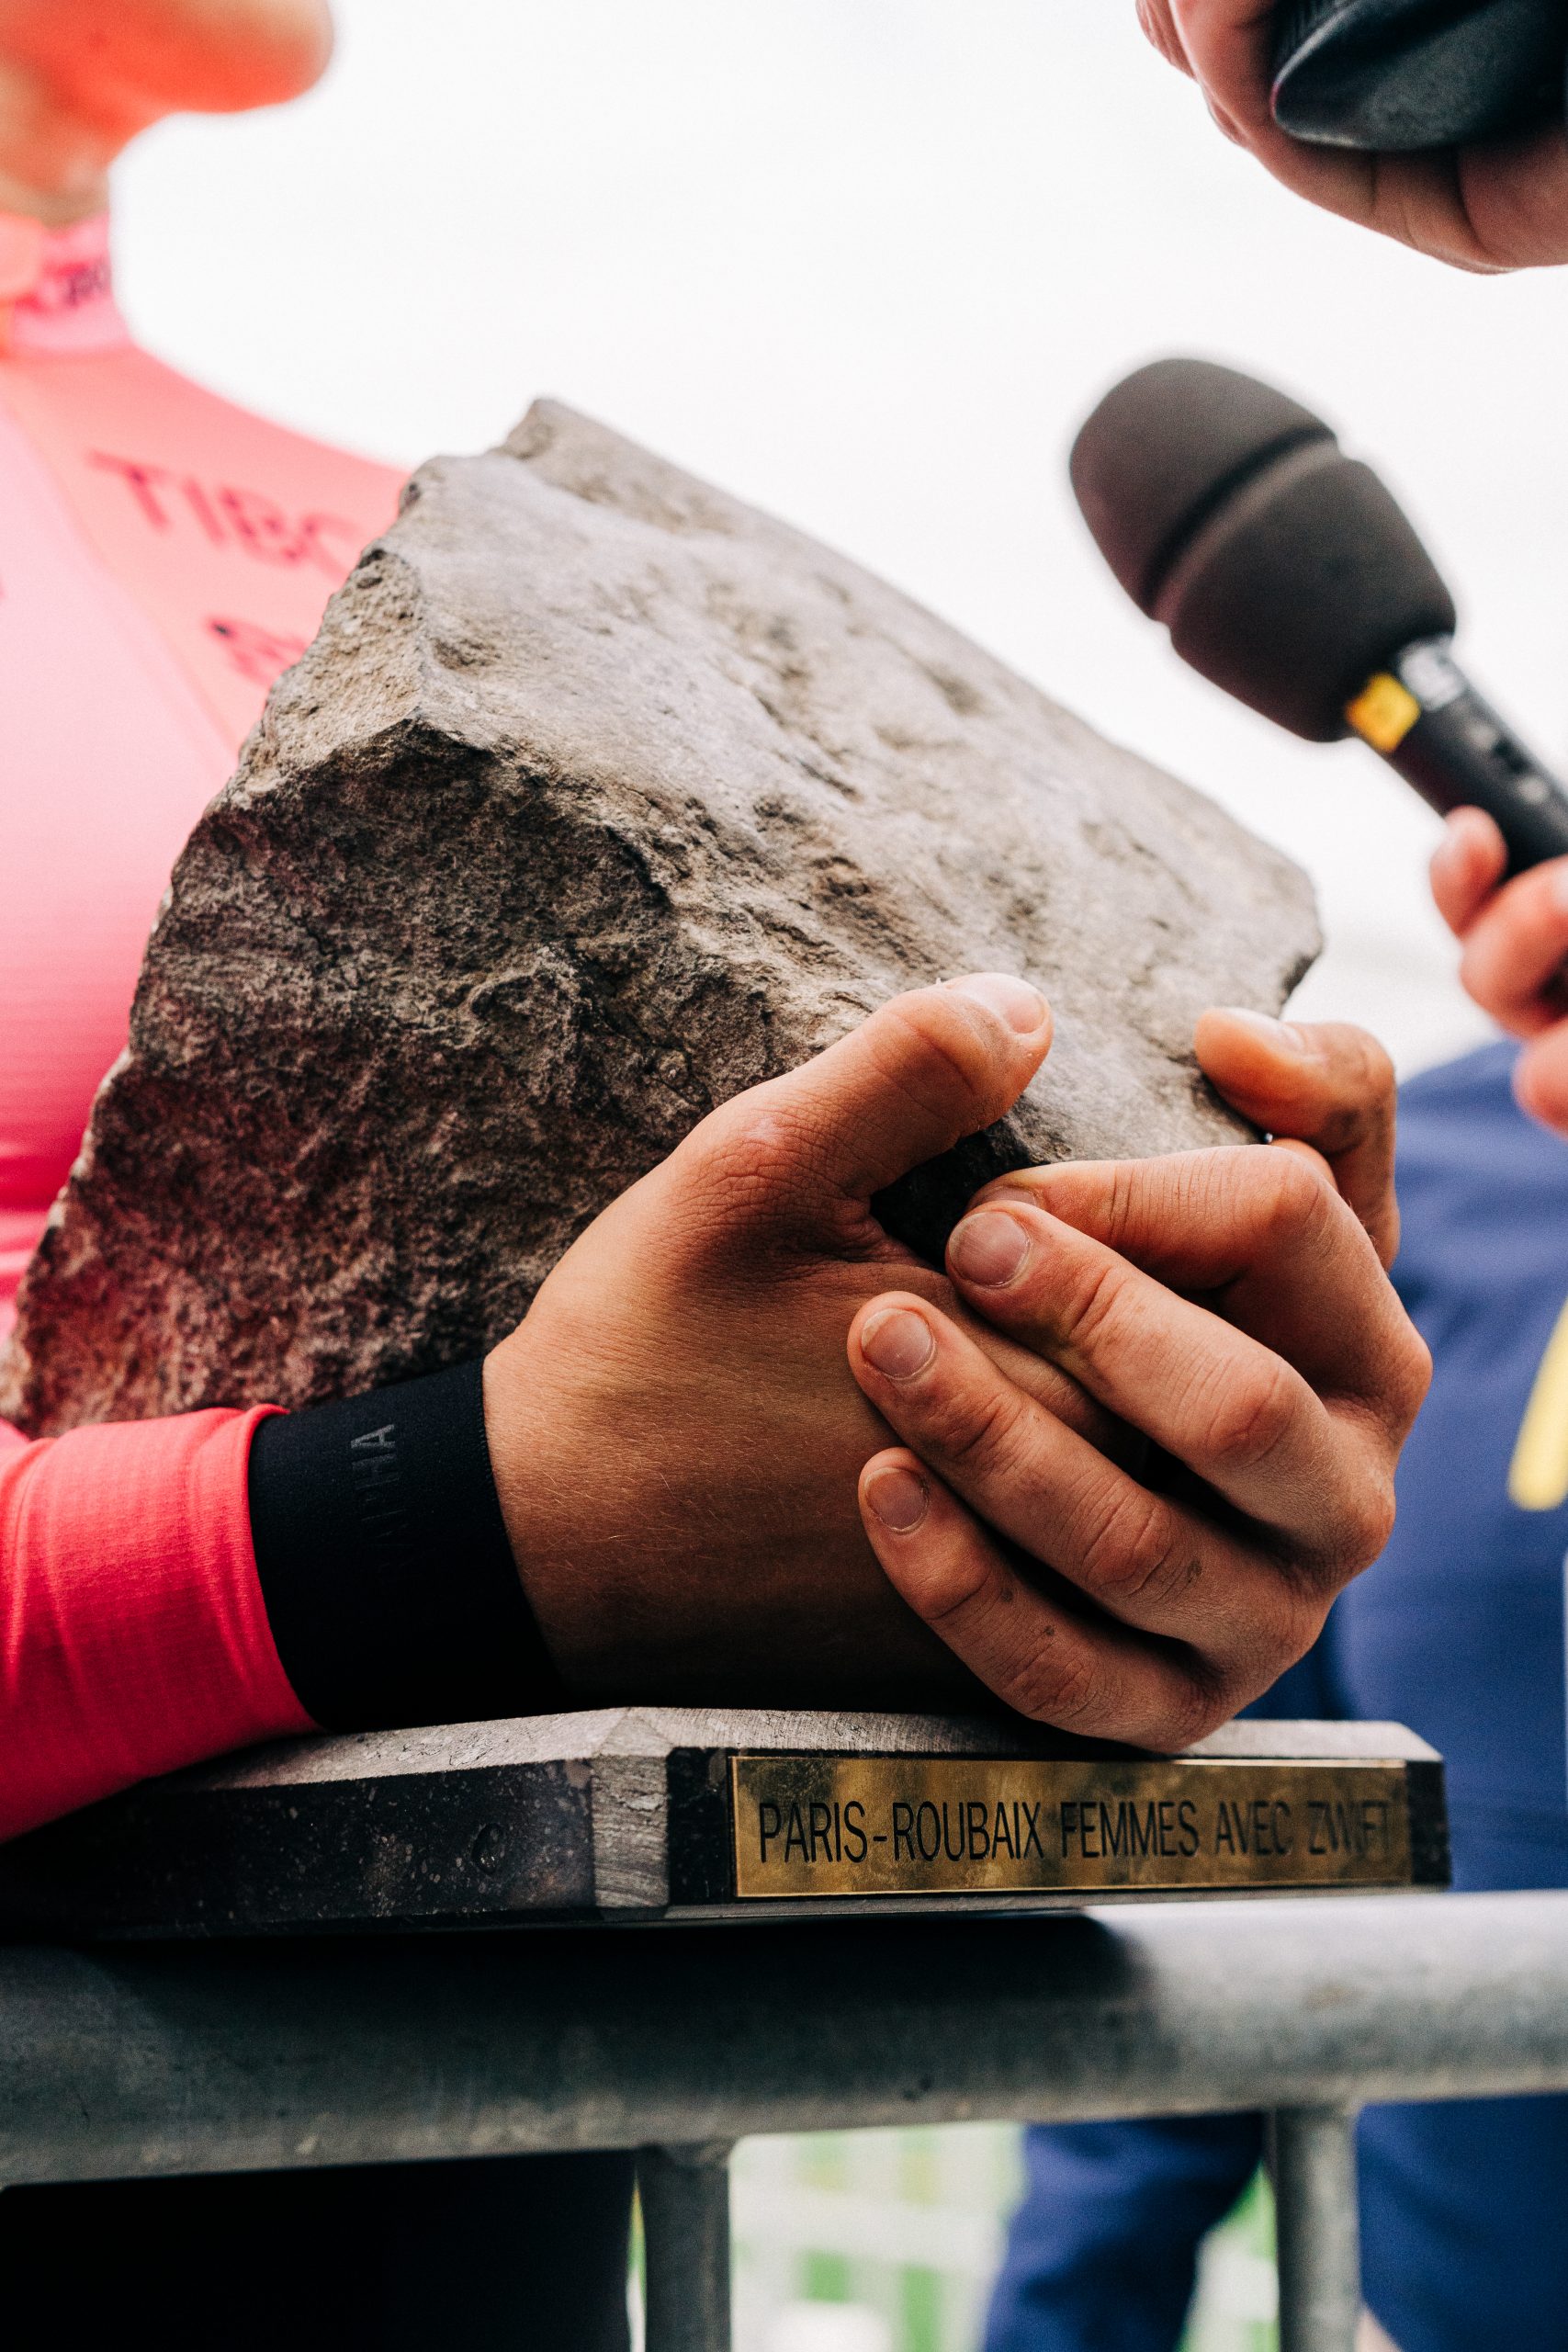 Paris-Roubaix Femmes trophy detail